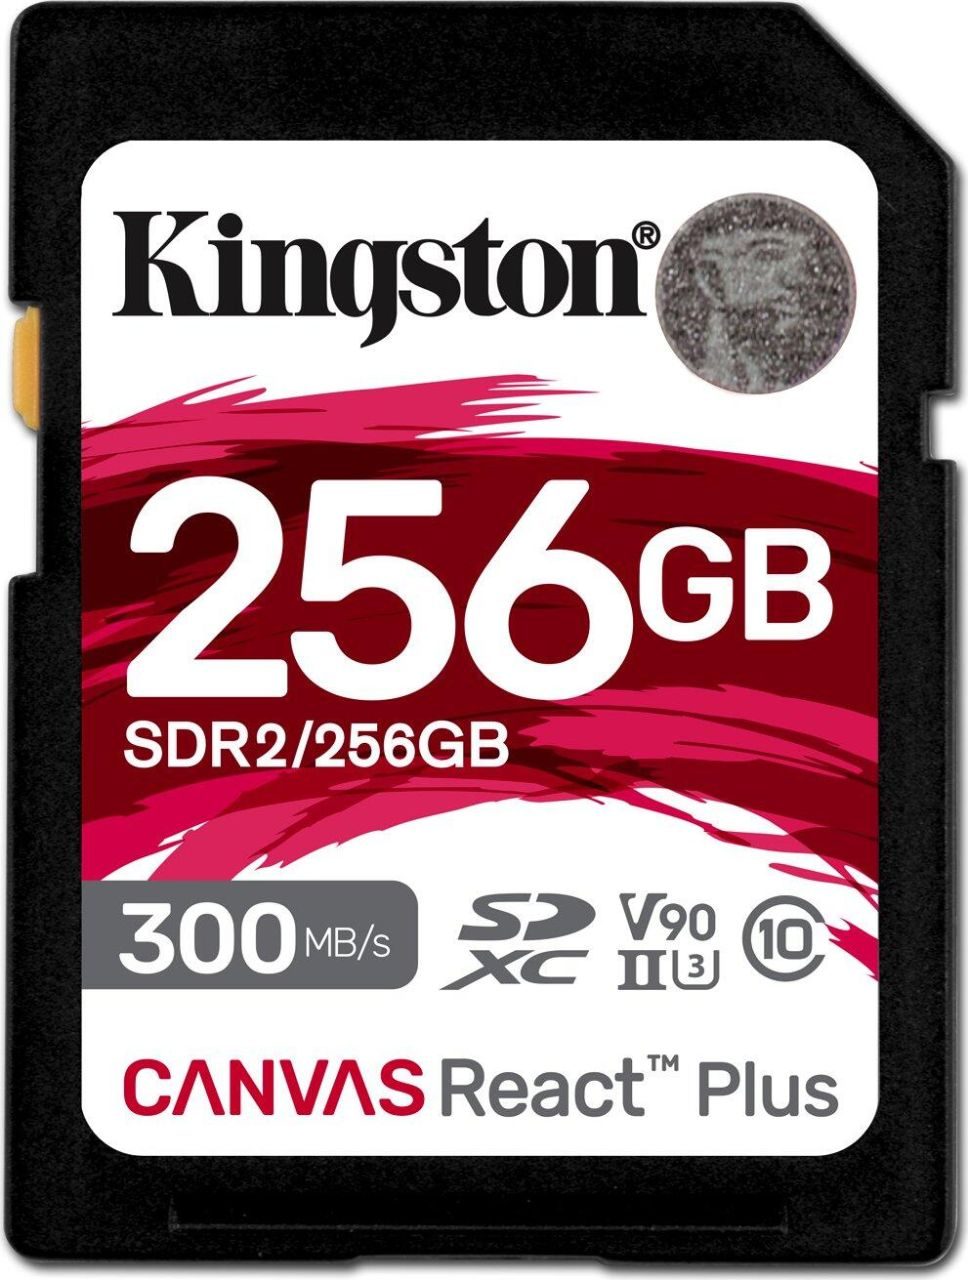 Kingston Canvas React Plus - 256GB